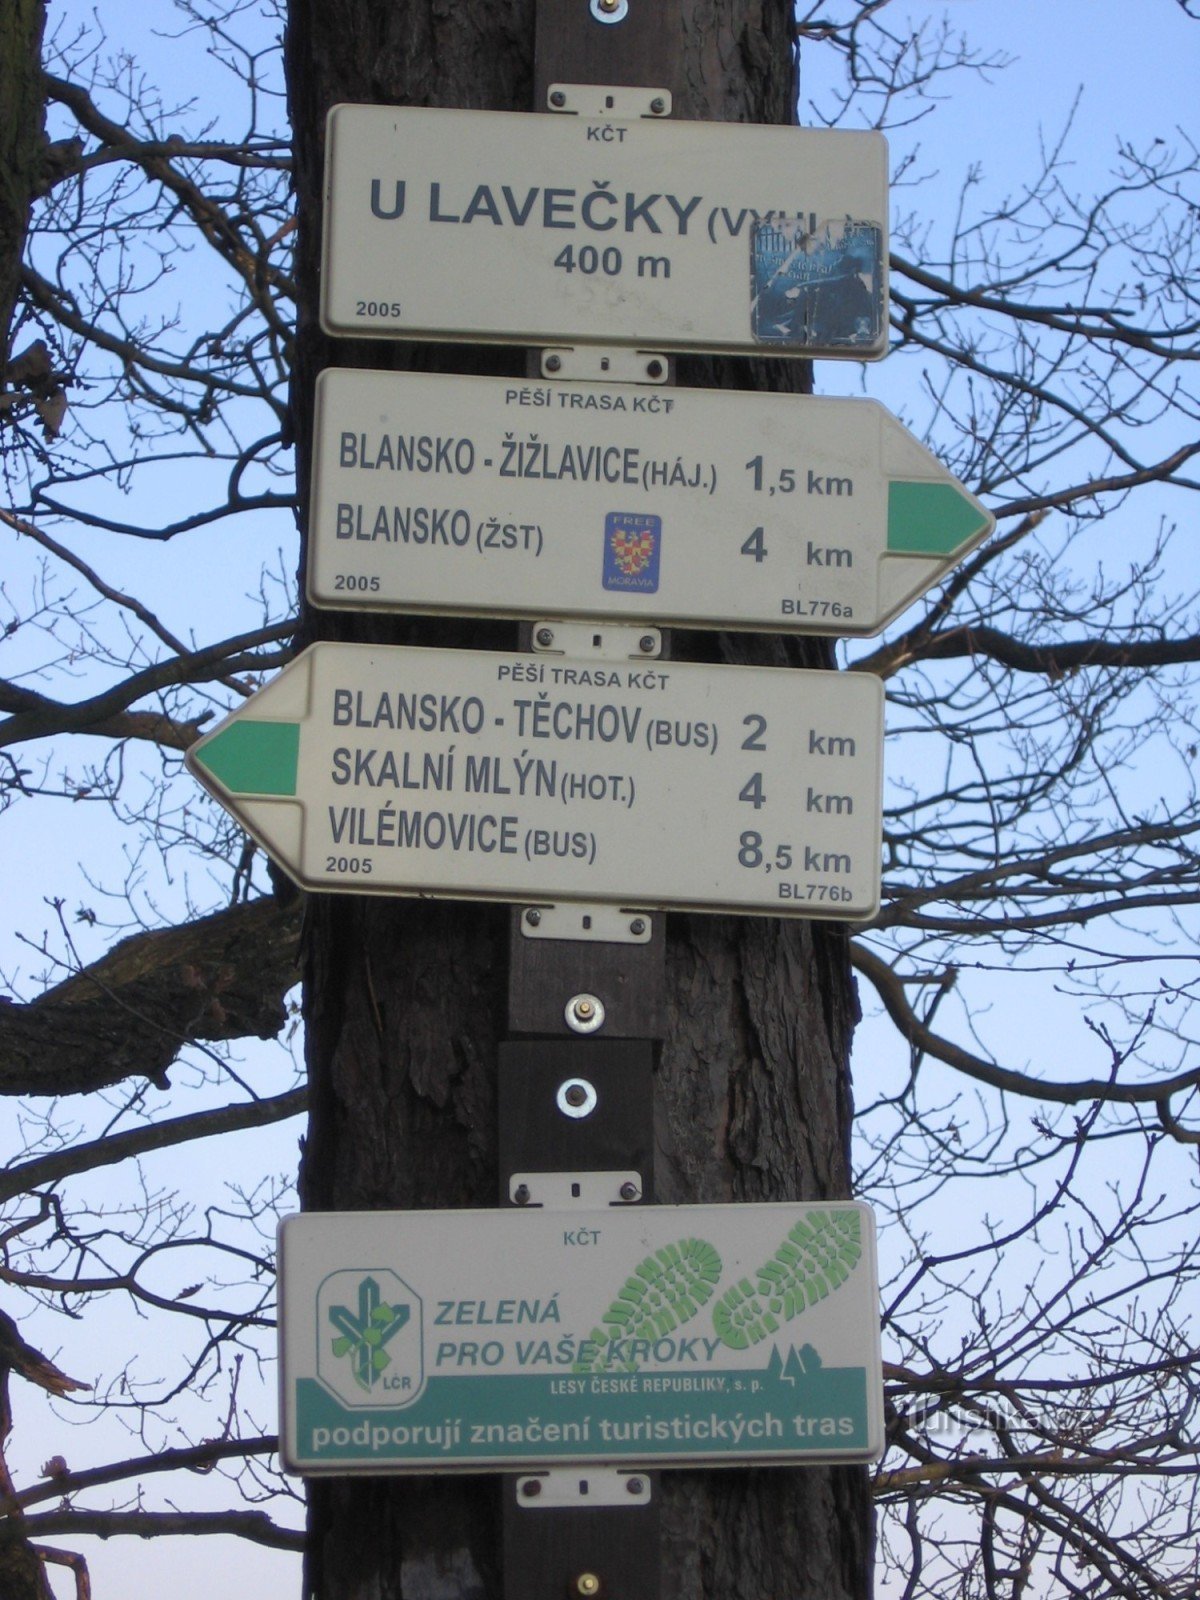 Placa de sinalização - U Lavečka